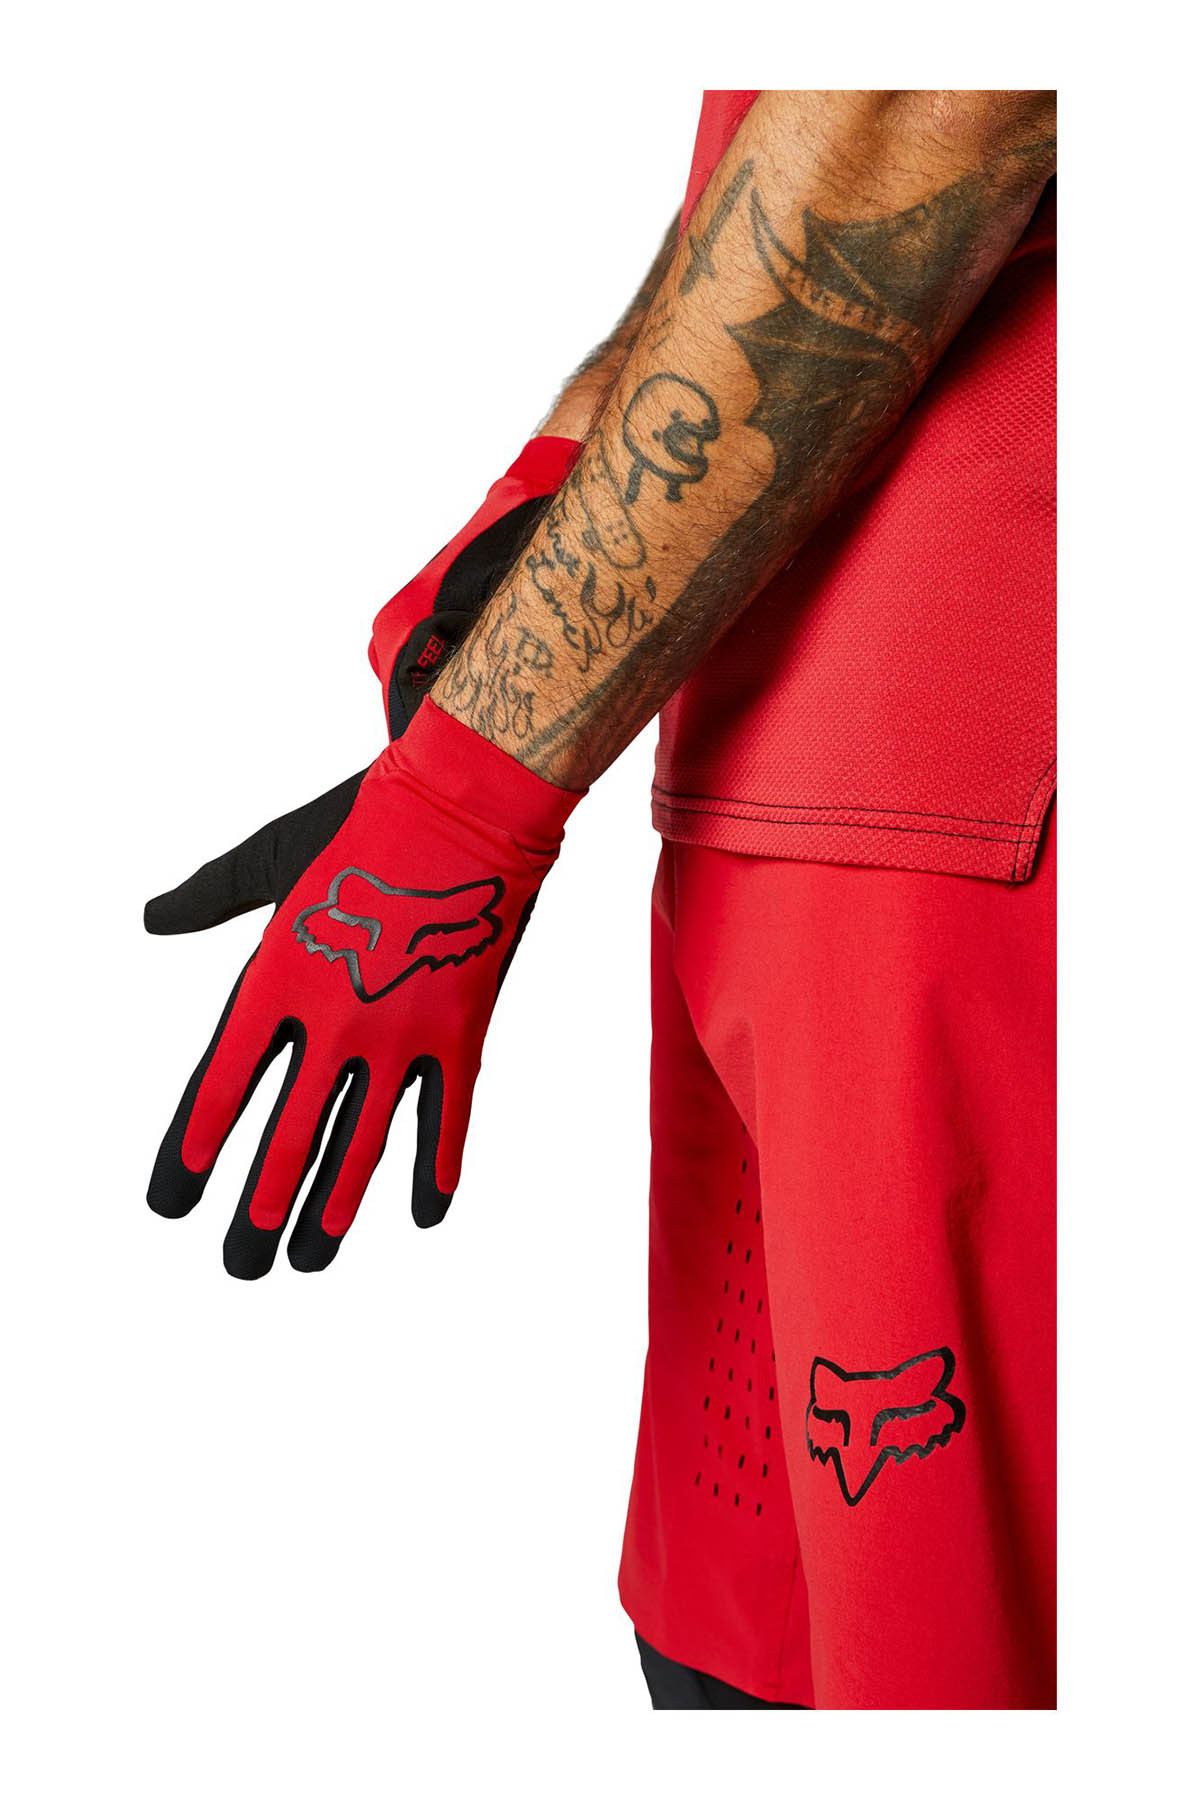 Fox Flexair Glove - Chili